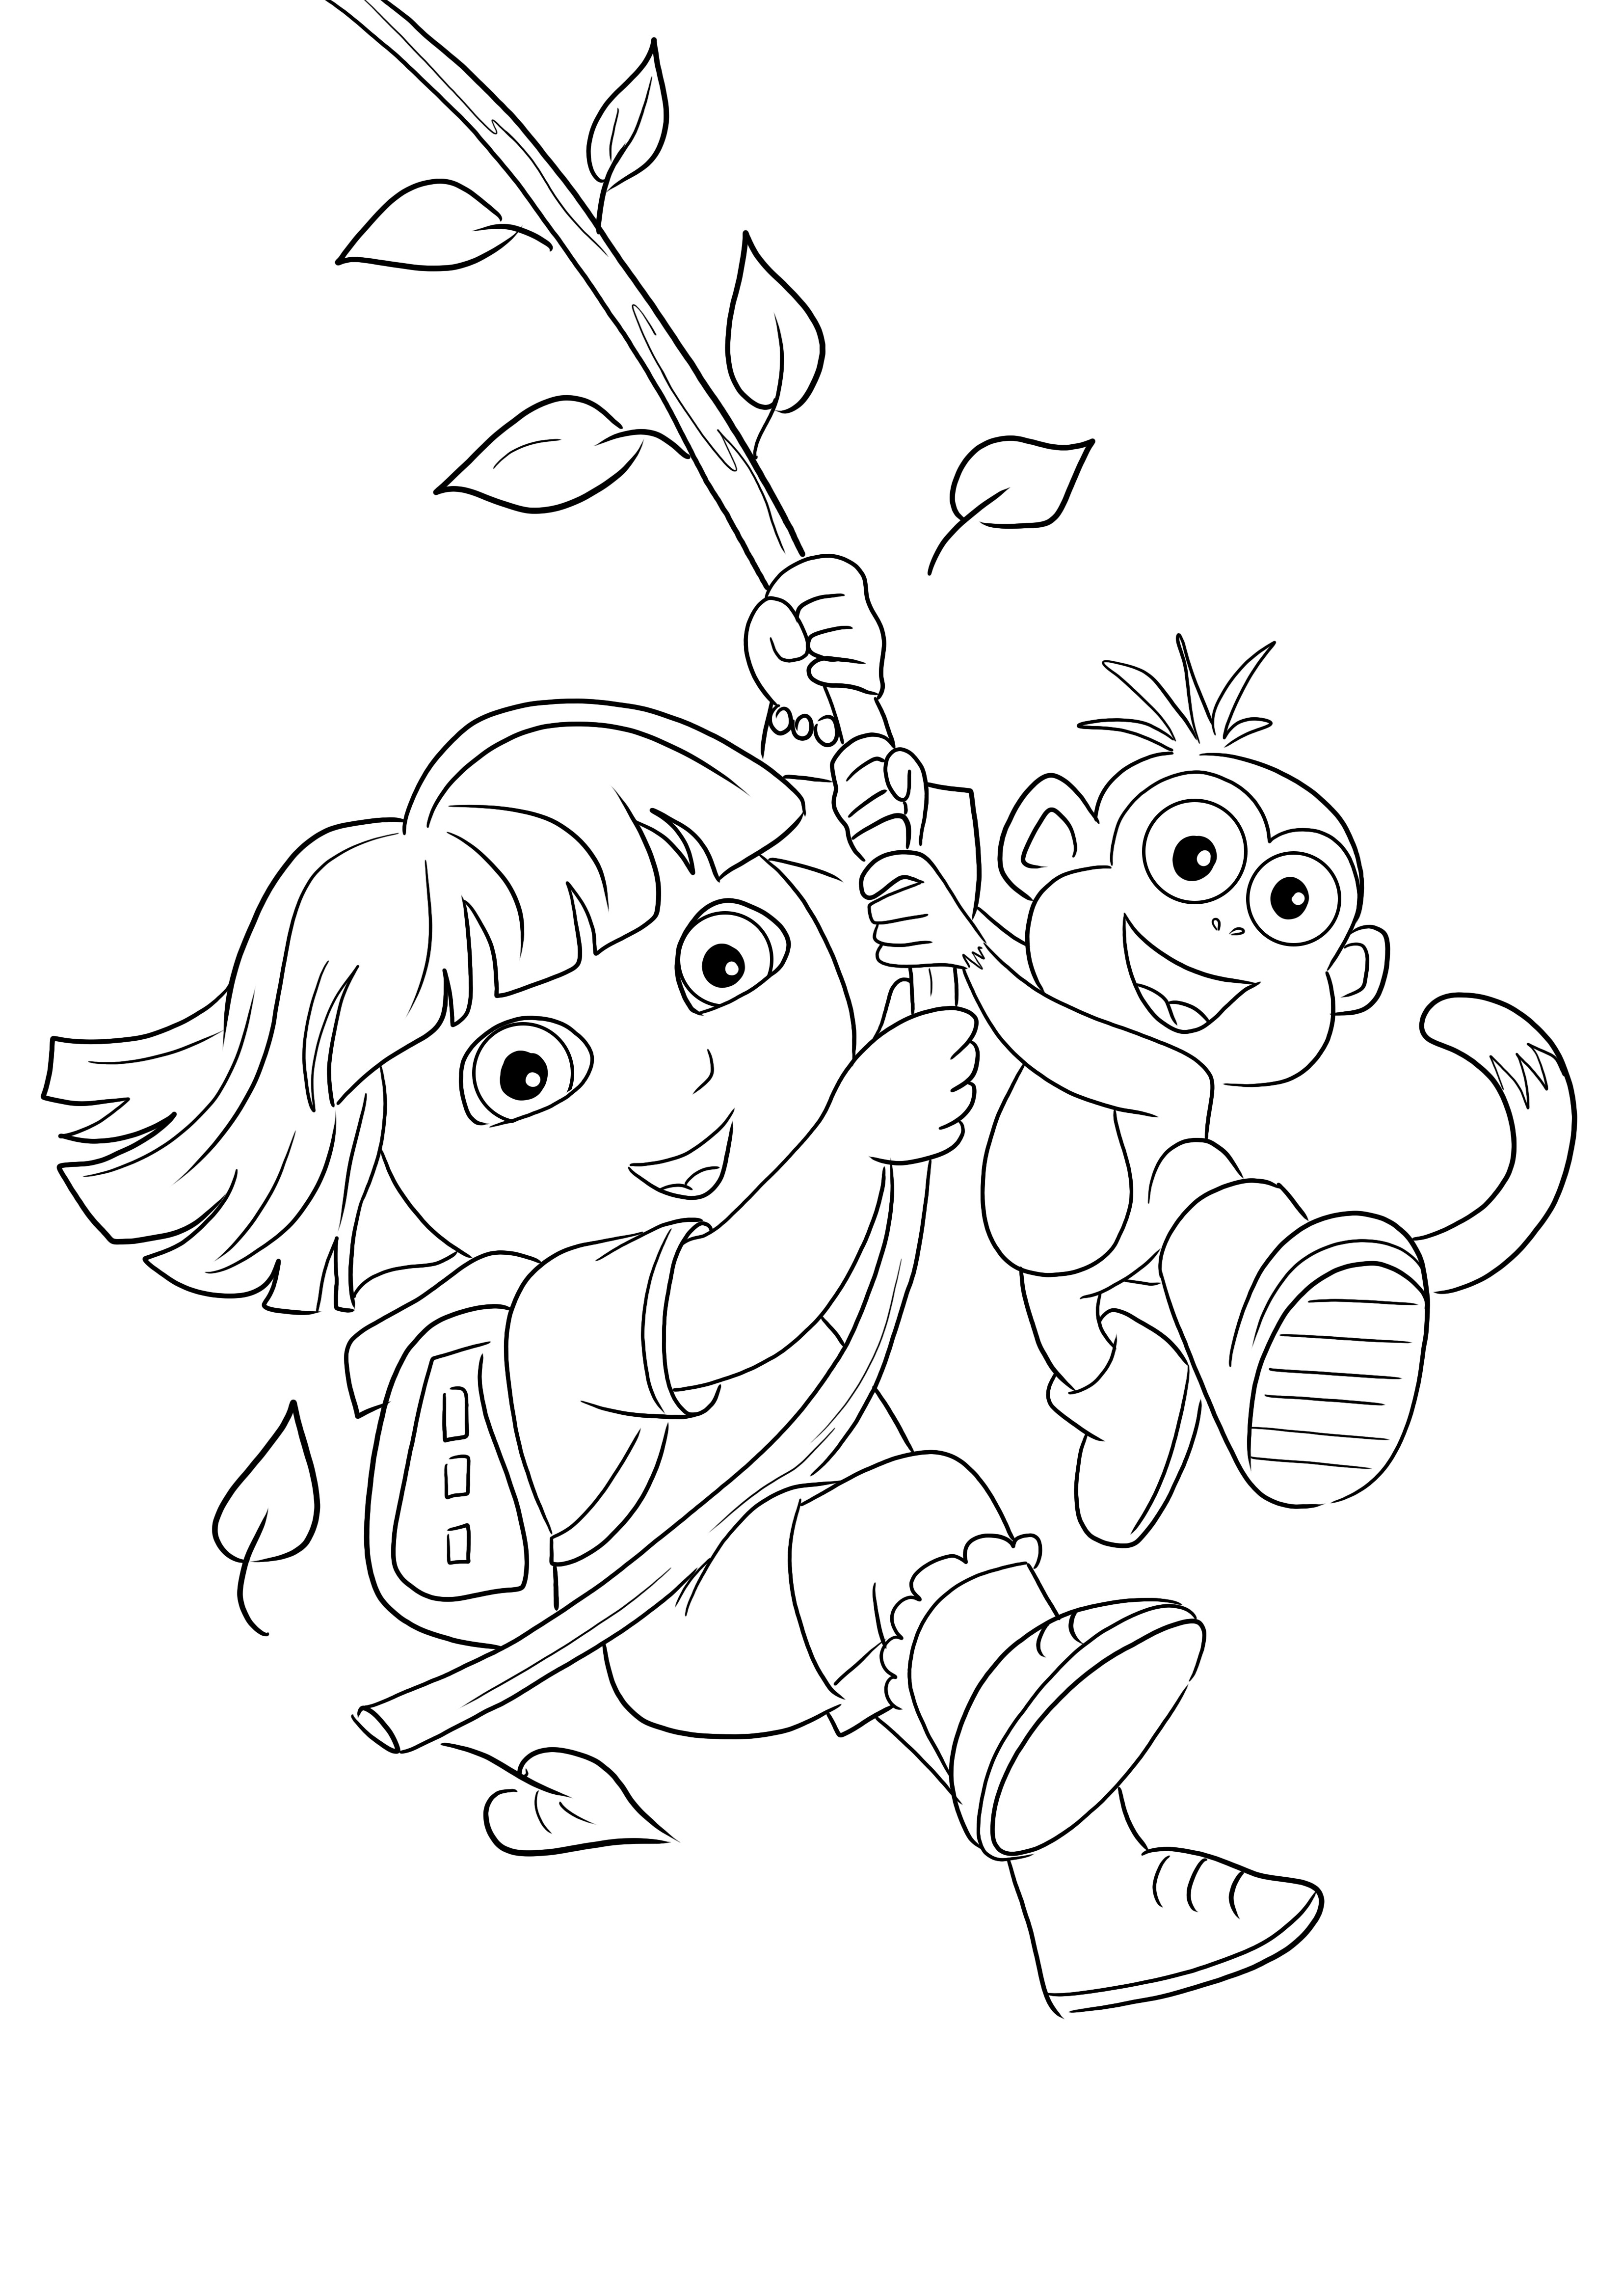 Imagen de Dora y Boots volando en la rama de un árbol para colorear e imprimir gratis